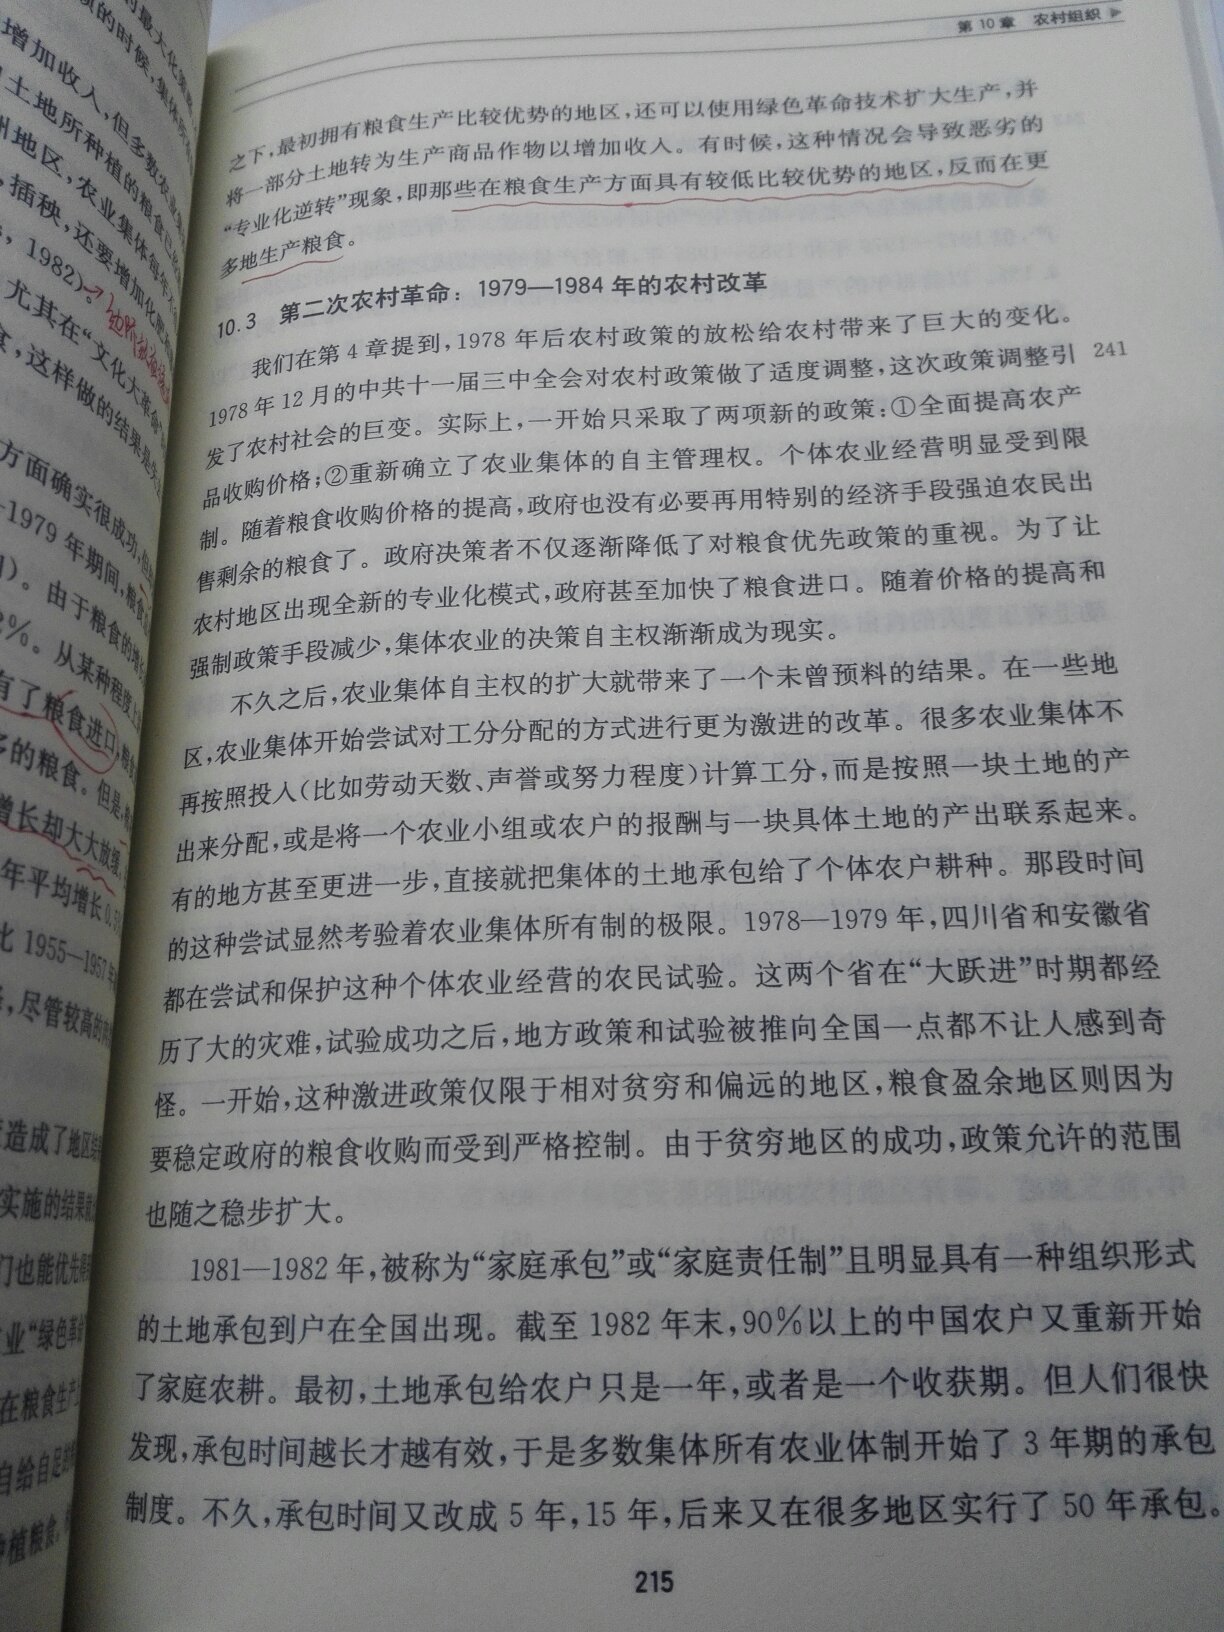 巴里诺顿，海外中国经济专家，他的书值得一读。